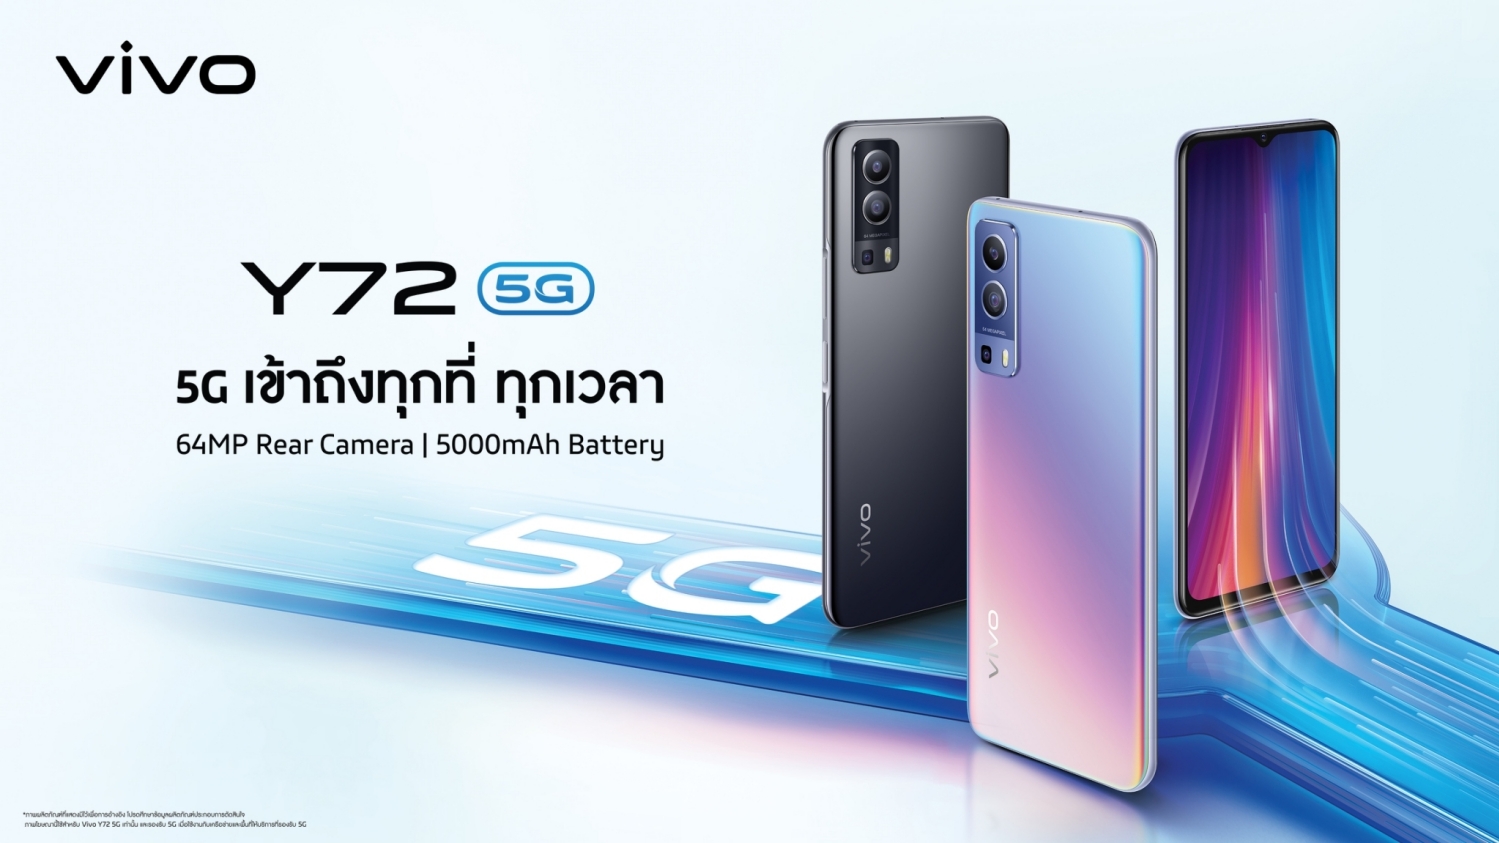 Vivo Y72 5G Akan Diperkenalkan Di Thailand Tidak Lama Lagi – Sokong Kamera 64MP, Bateri 5000mAh